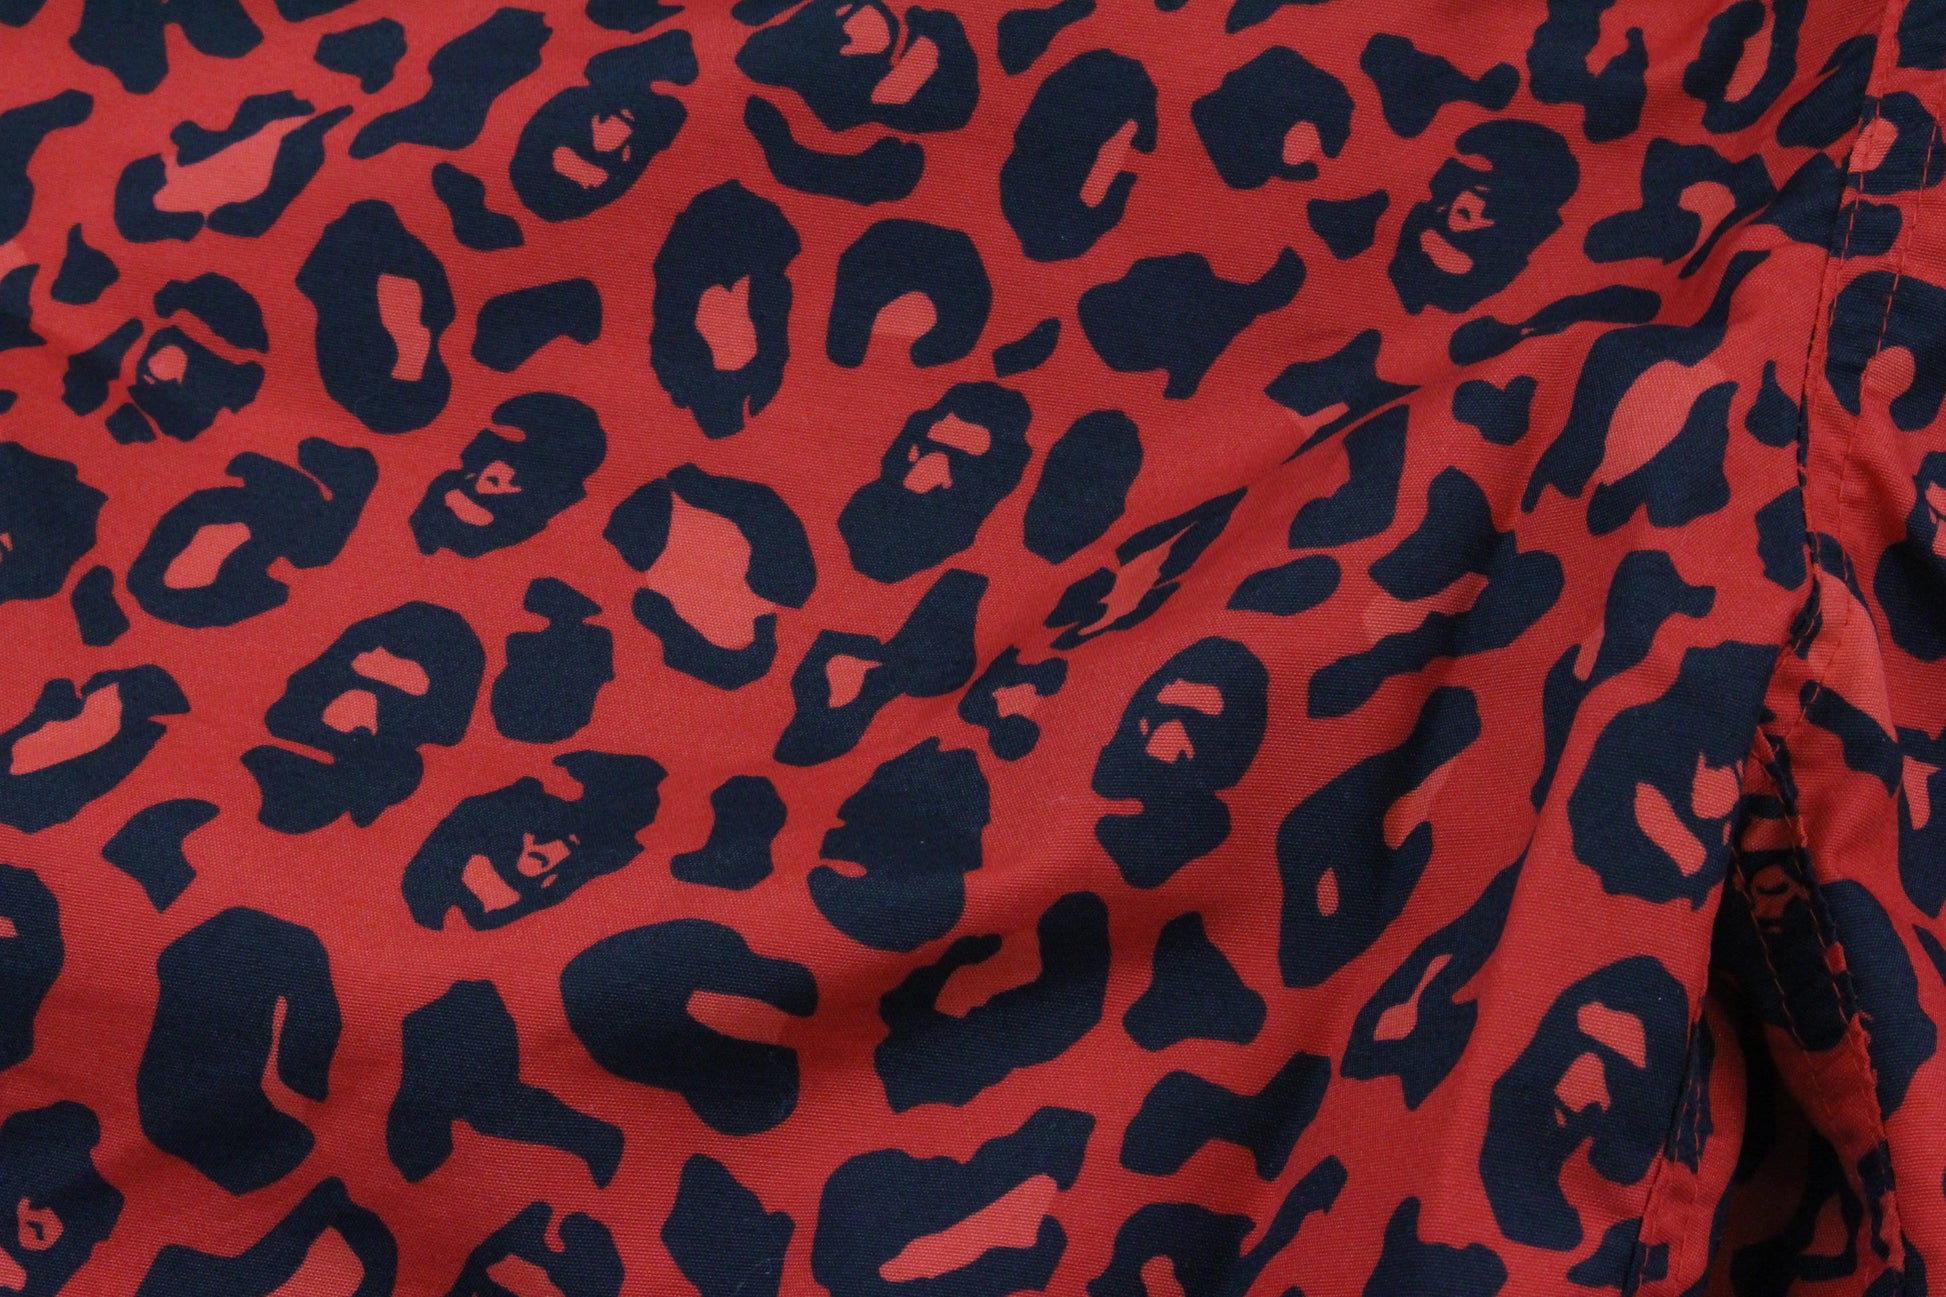 Bape Leopard Print Shorts Red - SaruGeneral